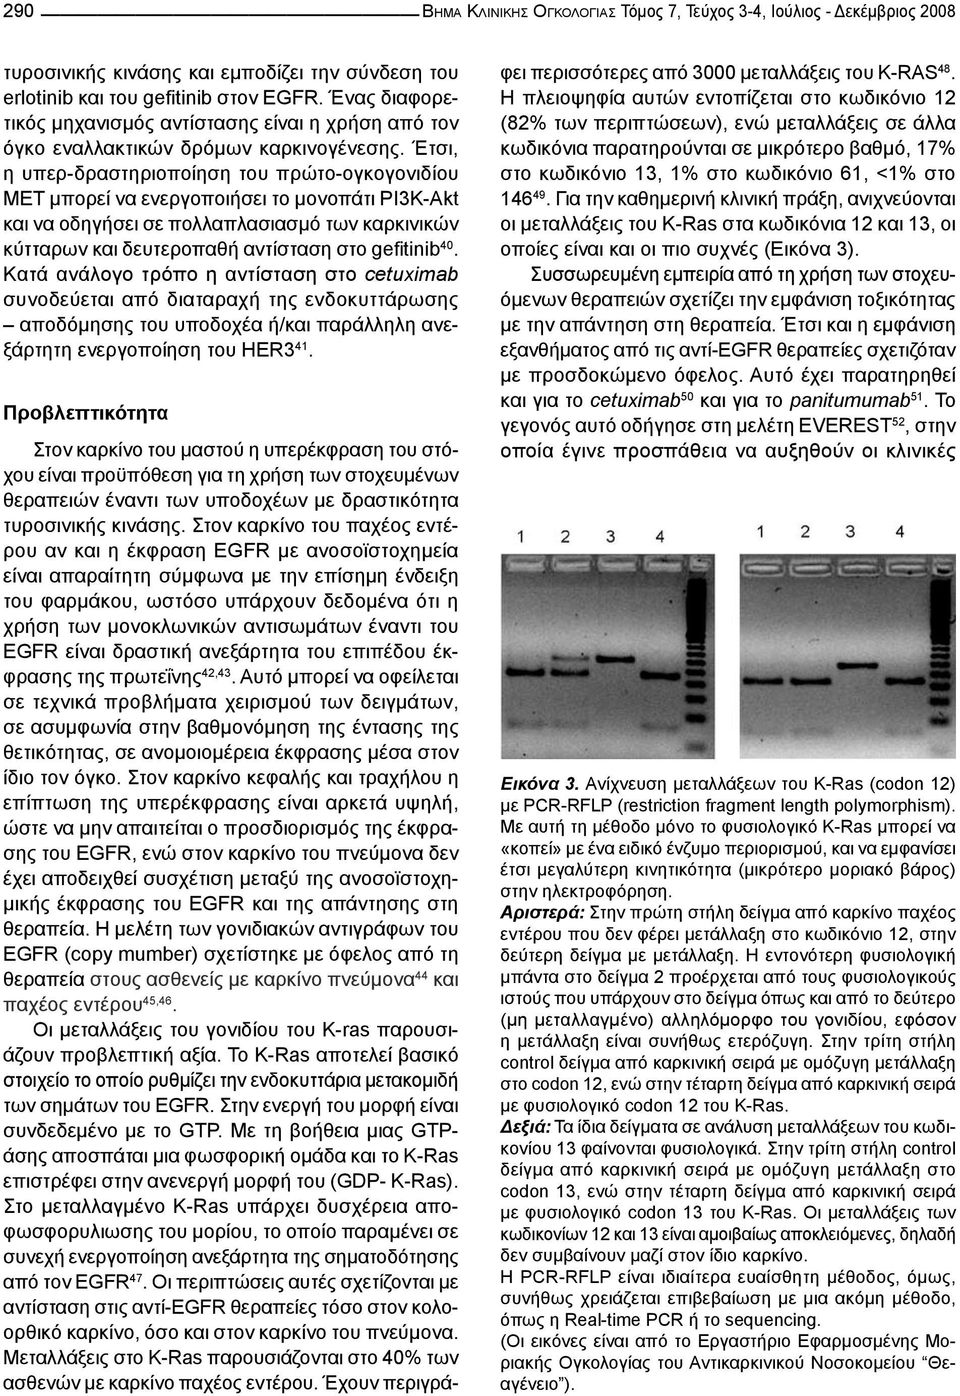 Έτσι, η υπερ-δραστηριοποίηση του πρώτο-ογκογονιδίου MET μπορεί να ενεργοποιήσει το μονοπάτι PI3K-Akt και να οδηγήσει σε πολλαπλασιασμό των καρκινικών κύτταρων και δευτεροπαθή αντίσταση στο gefitinib